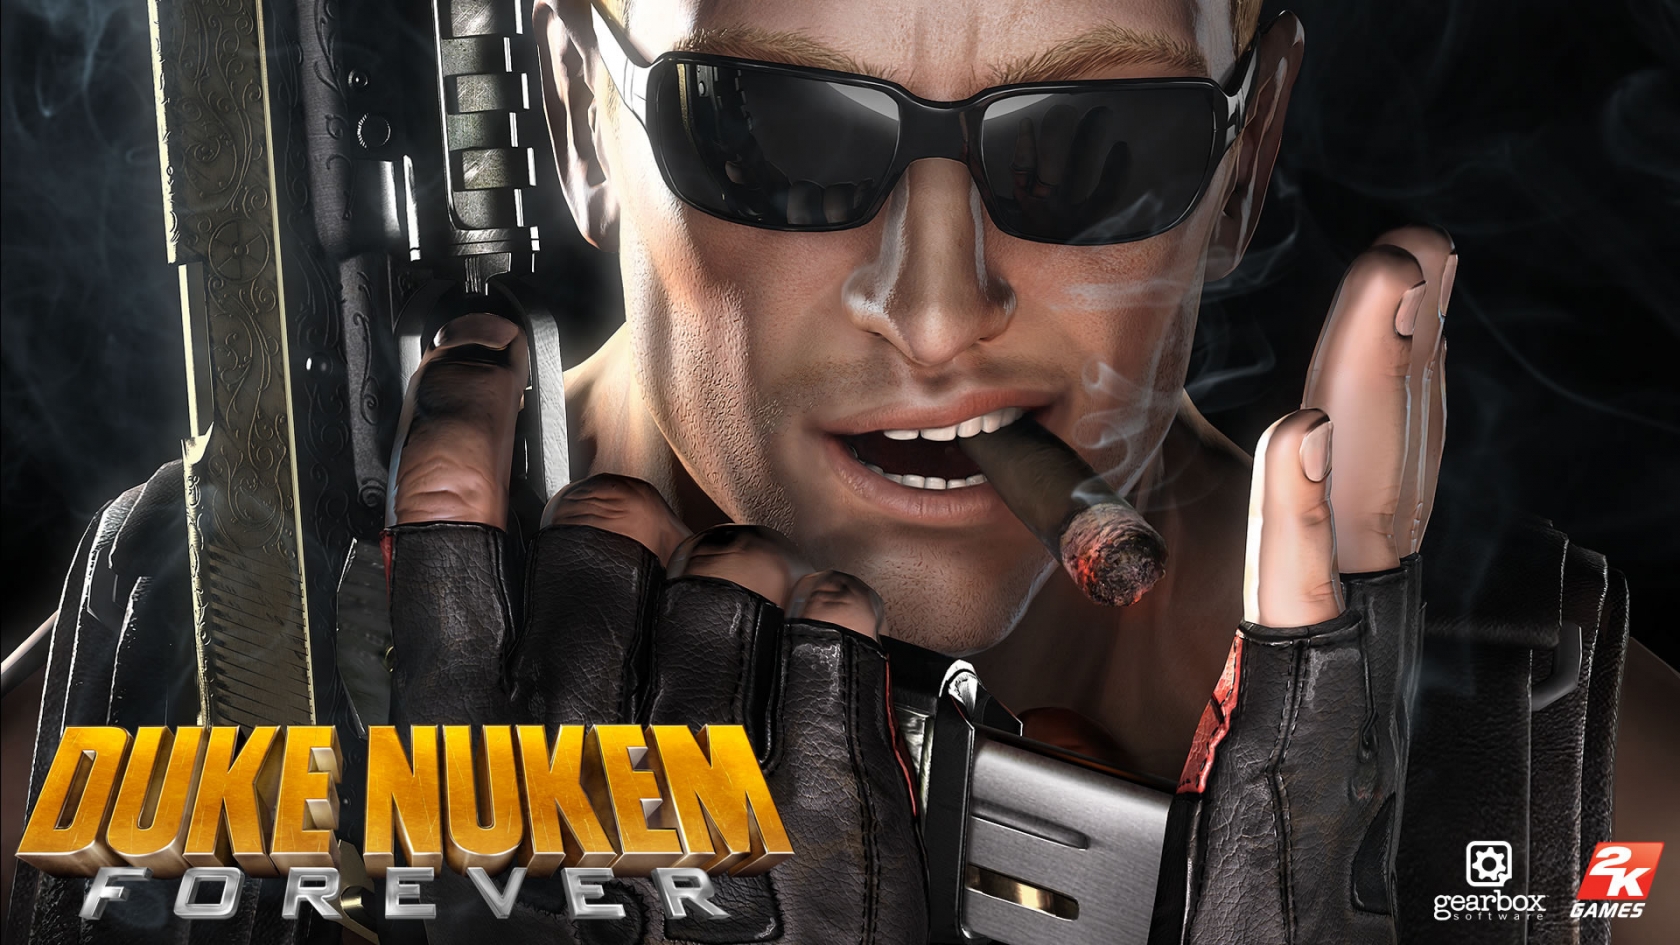 Duke Nukem Forever for 1680 x 945 HDTV resolution